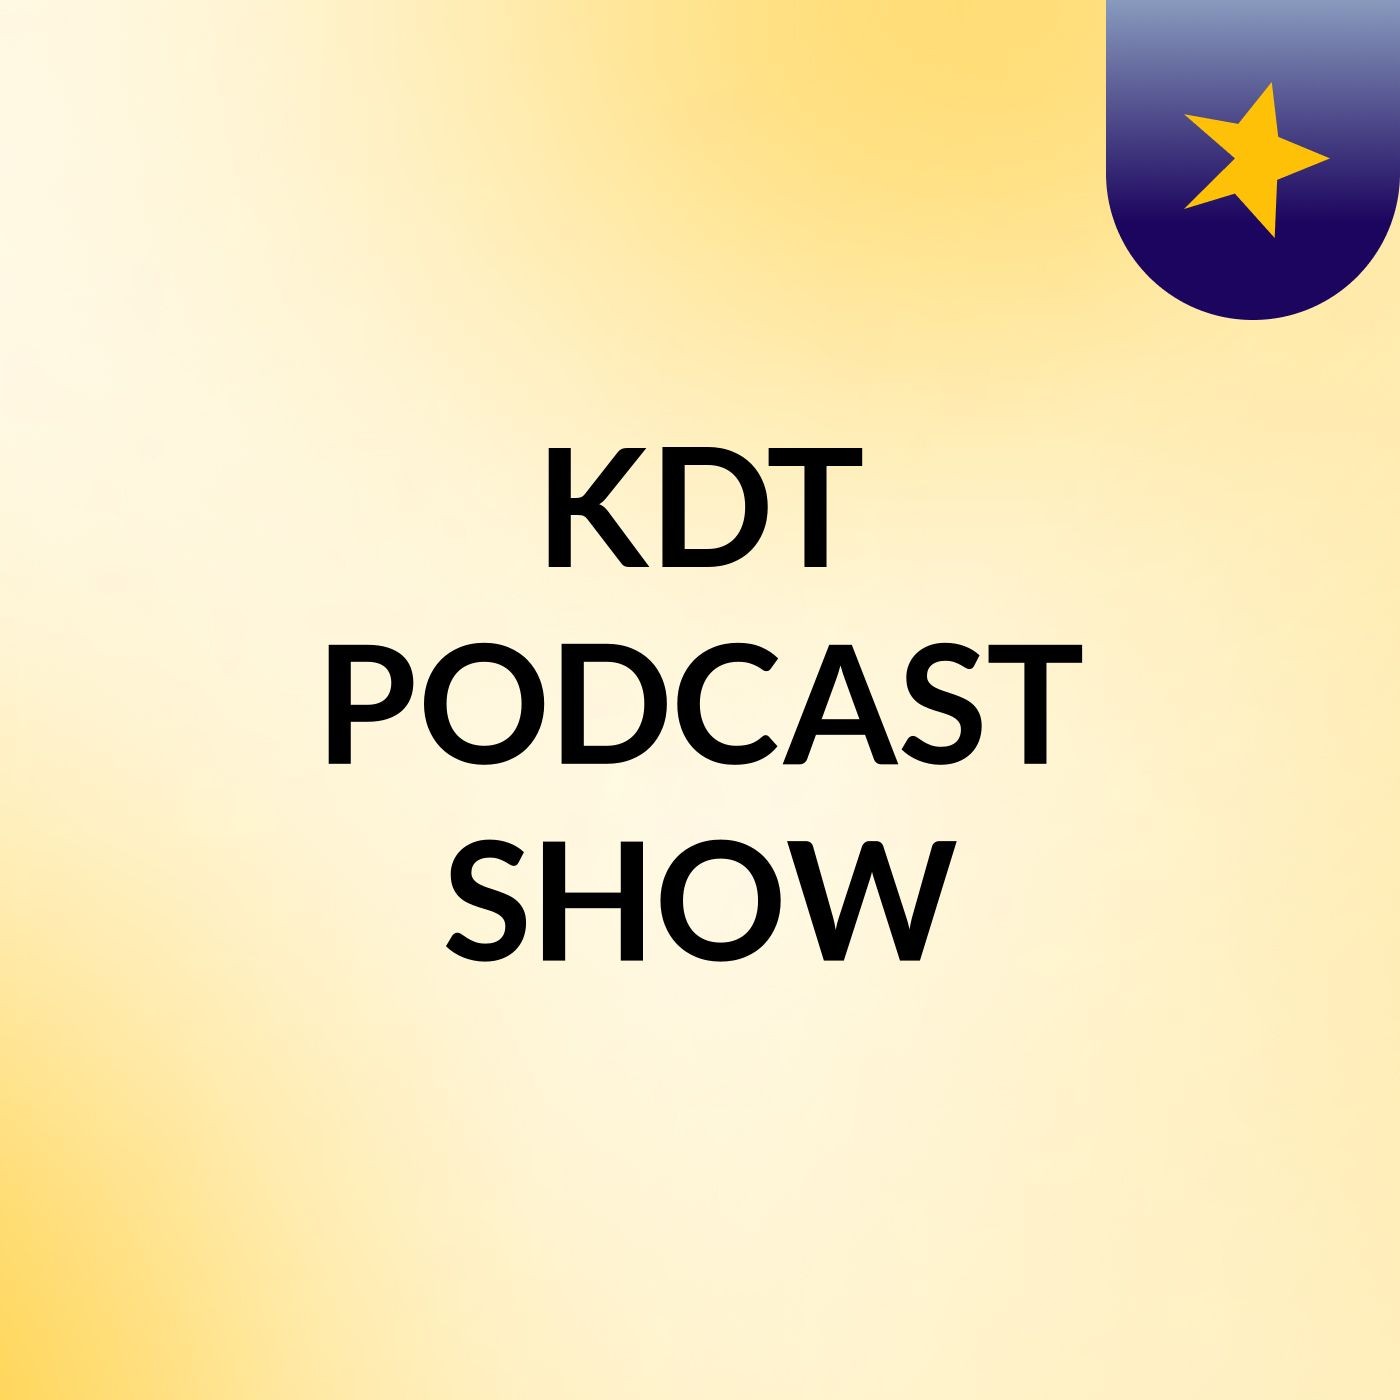 Episode 6 - KDT PODCAST SHOW